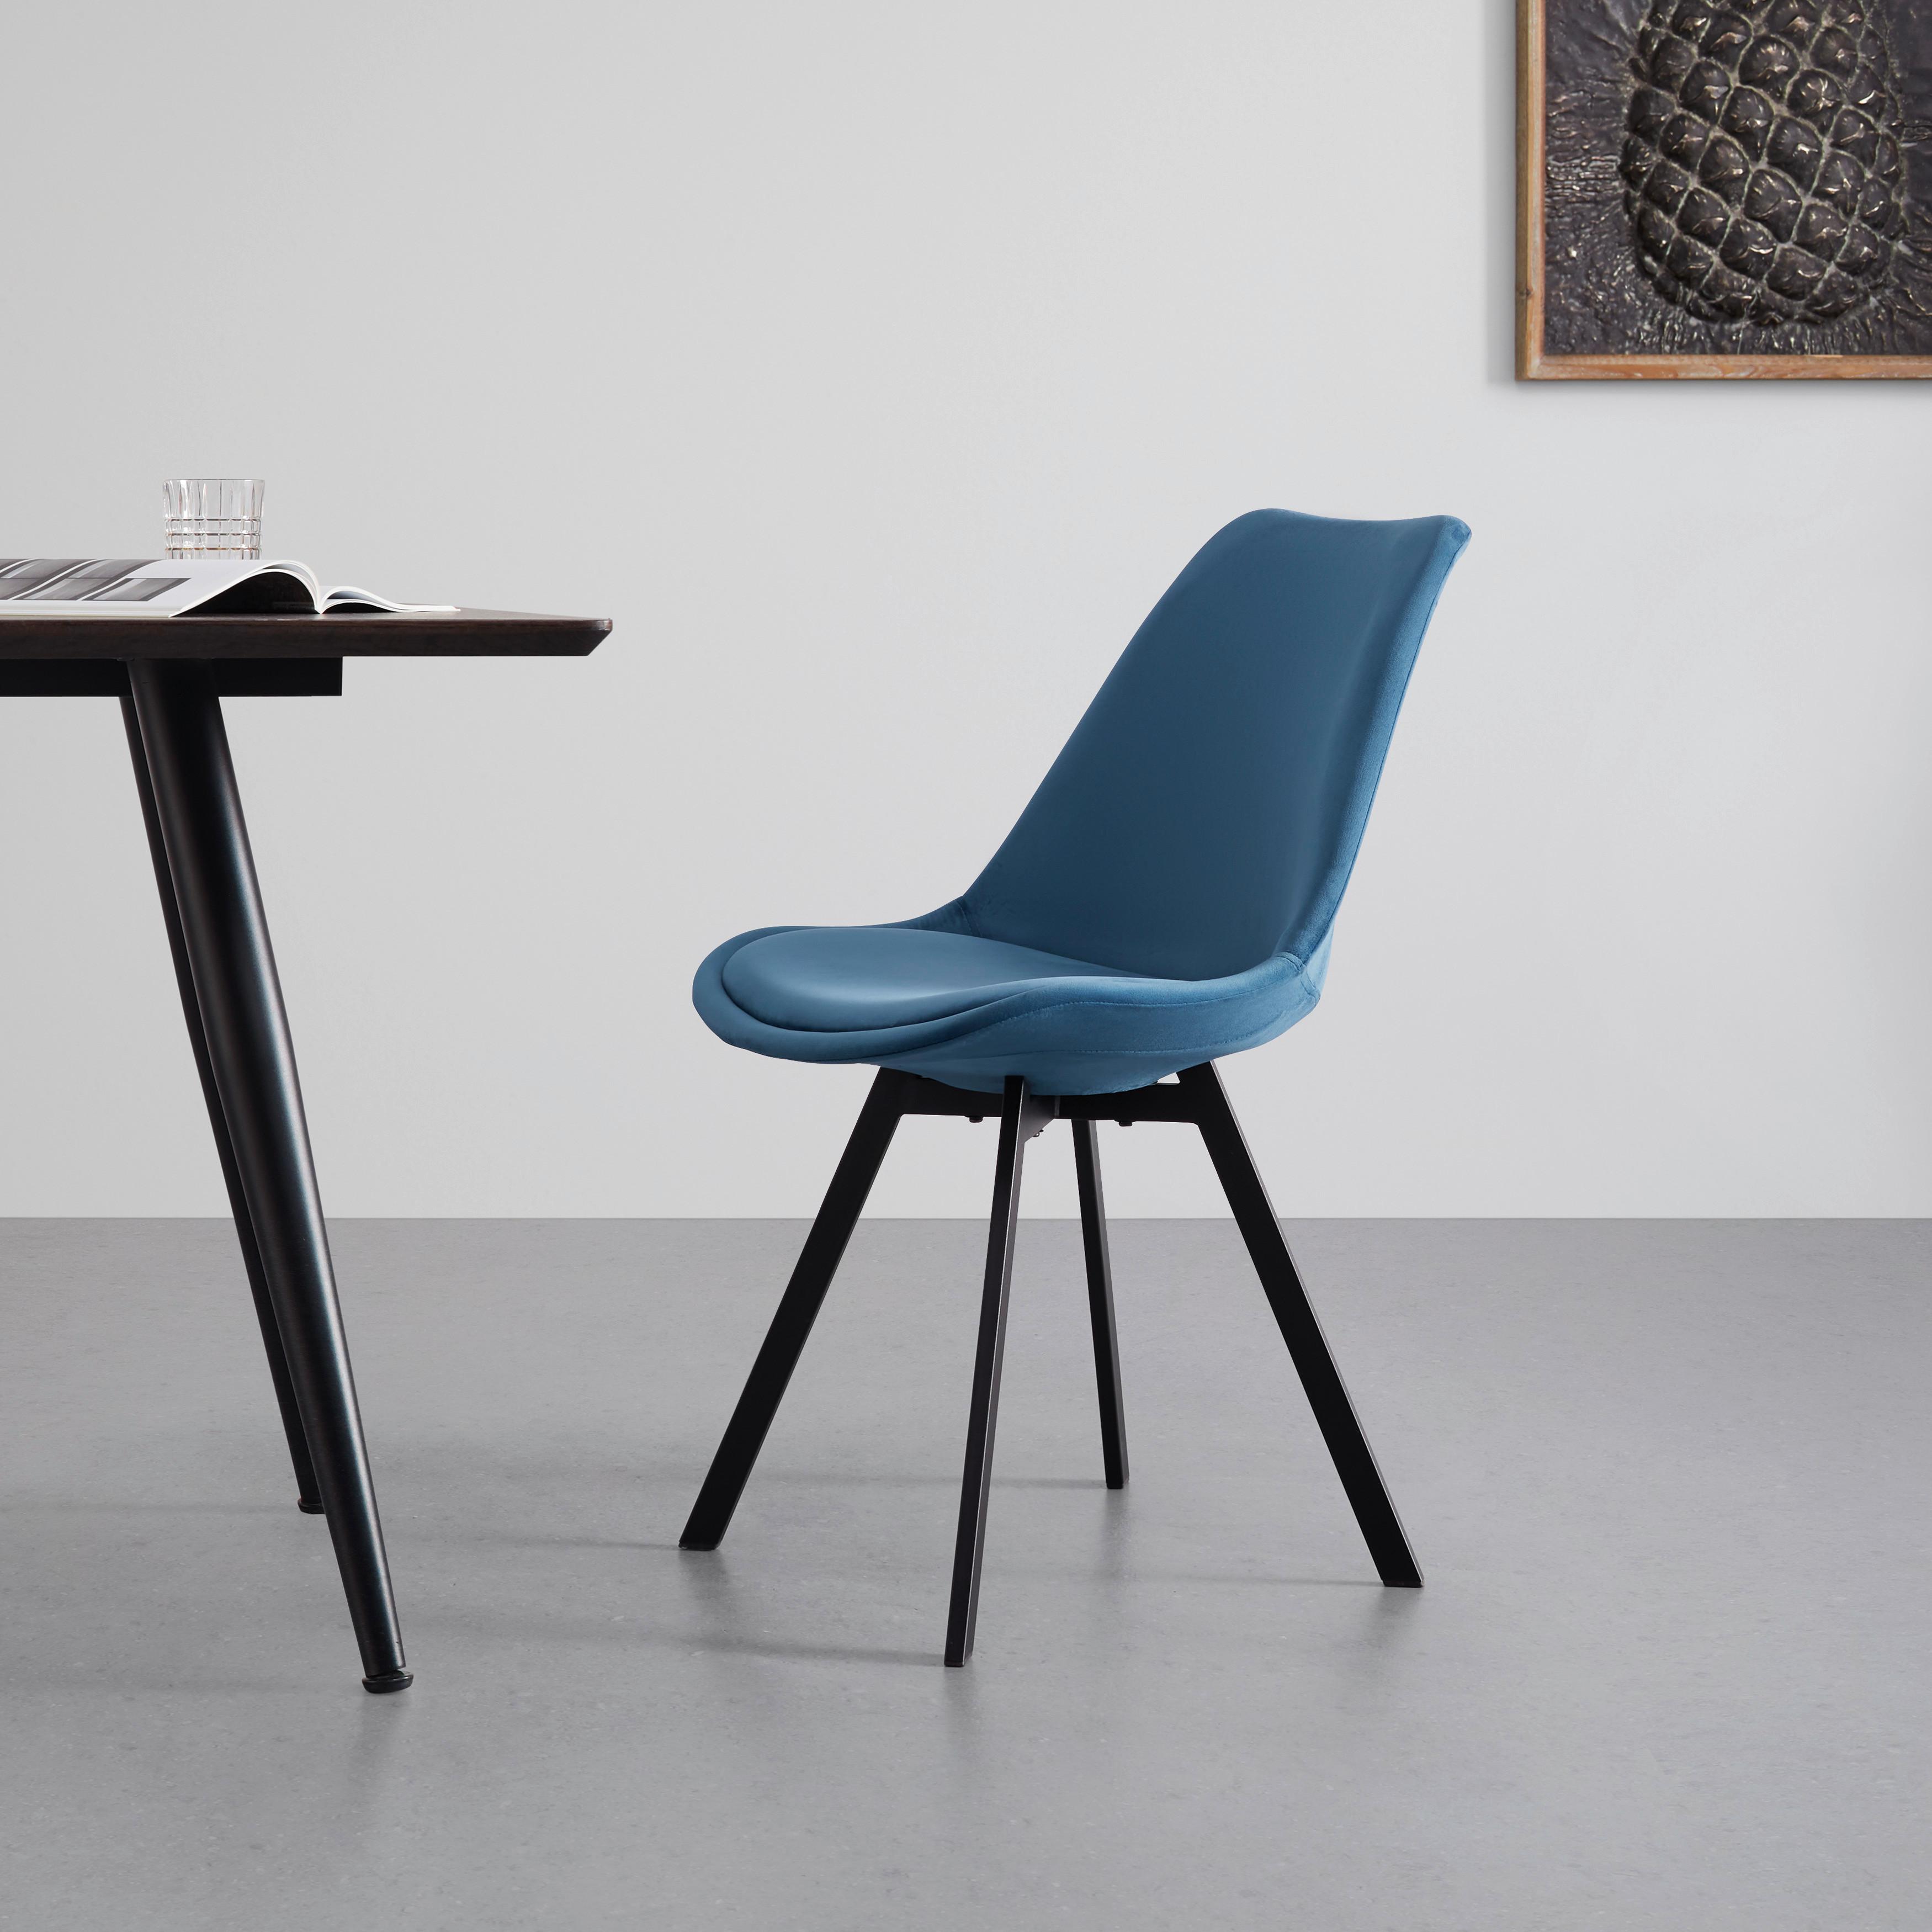 Stuhl "Mia", Samtbezug, blau, Gepolstert - Blau/Schwarz, MODERN, Textil/Metall (45/84/55cm) - Bessagi Home